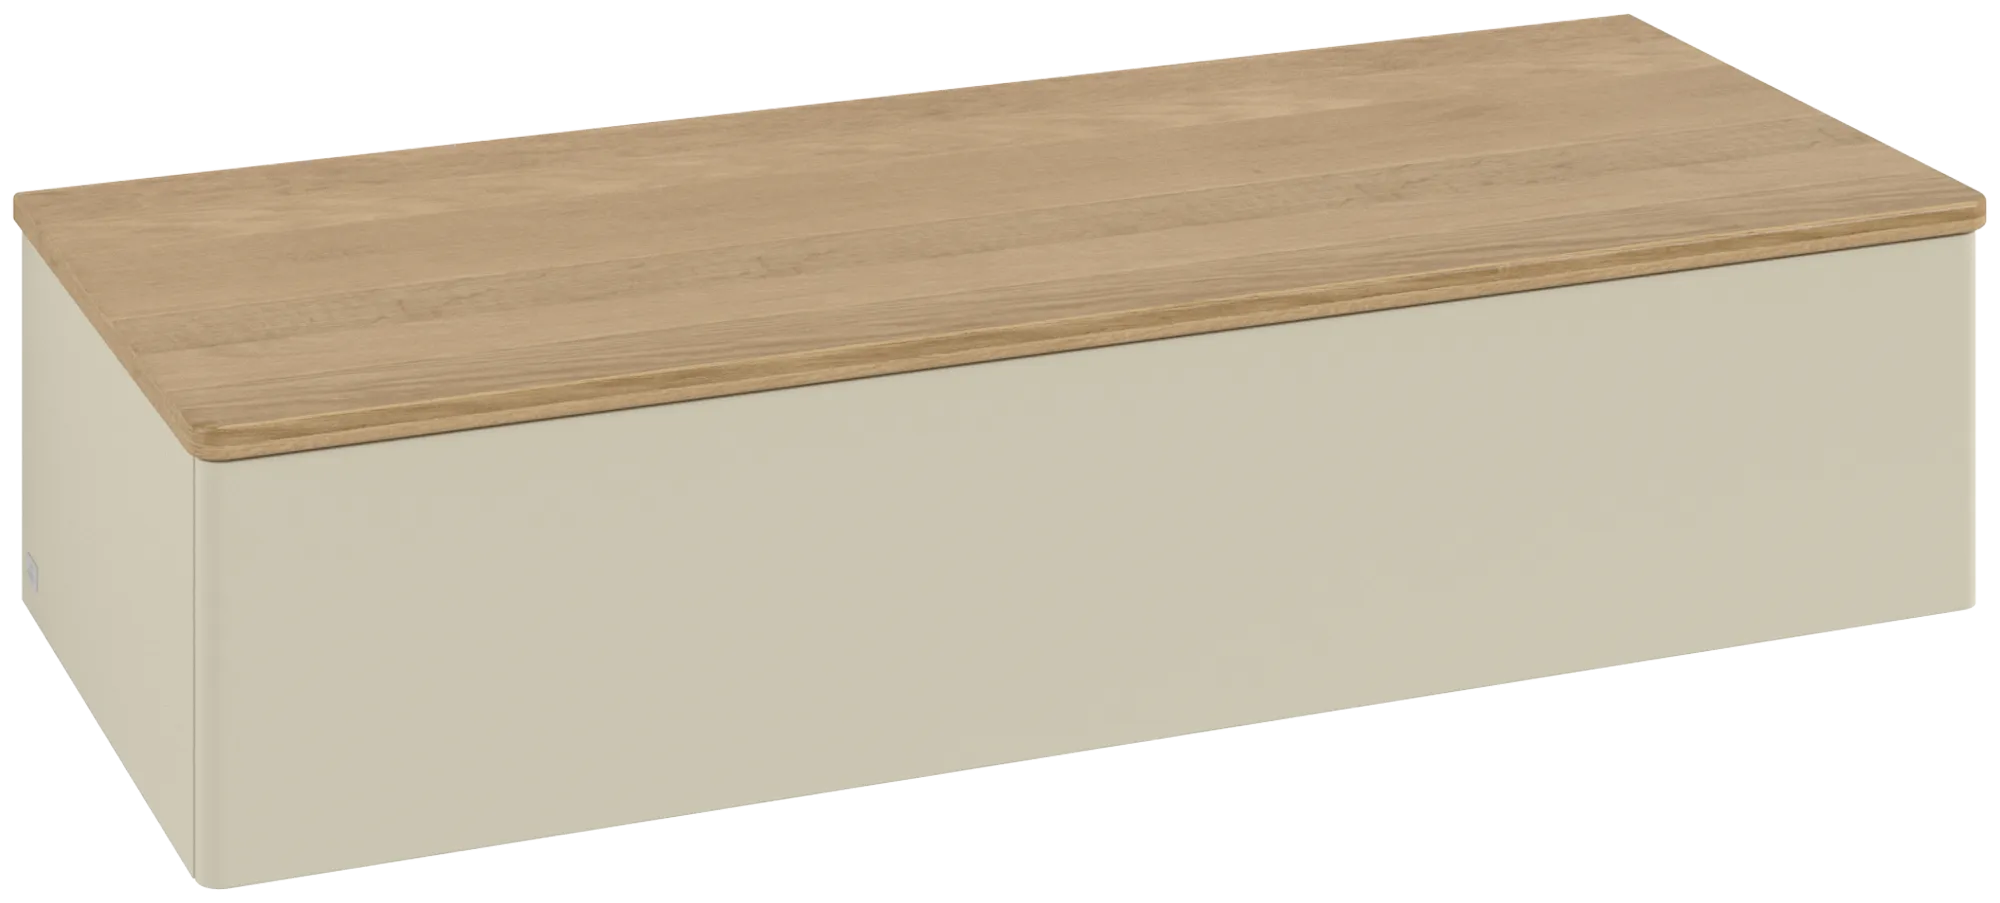 Bild von VILLEROY BOCH Antao Sideboard, 1 Auszug, 1200 x 268 x 500 mm, Front ohne Struktur, Silk Grey Matt Lacquer / Honey Oak #K41001HJ